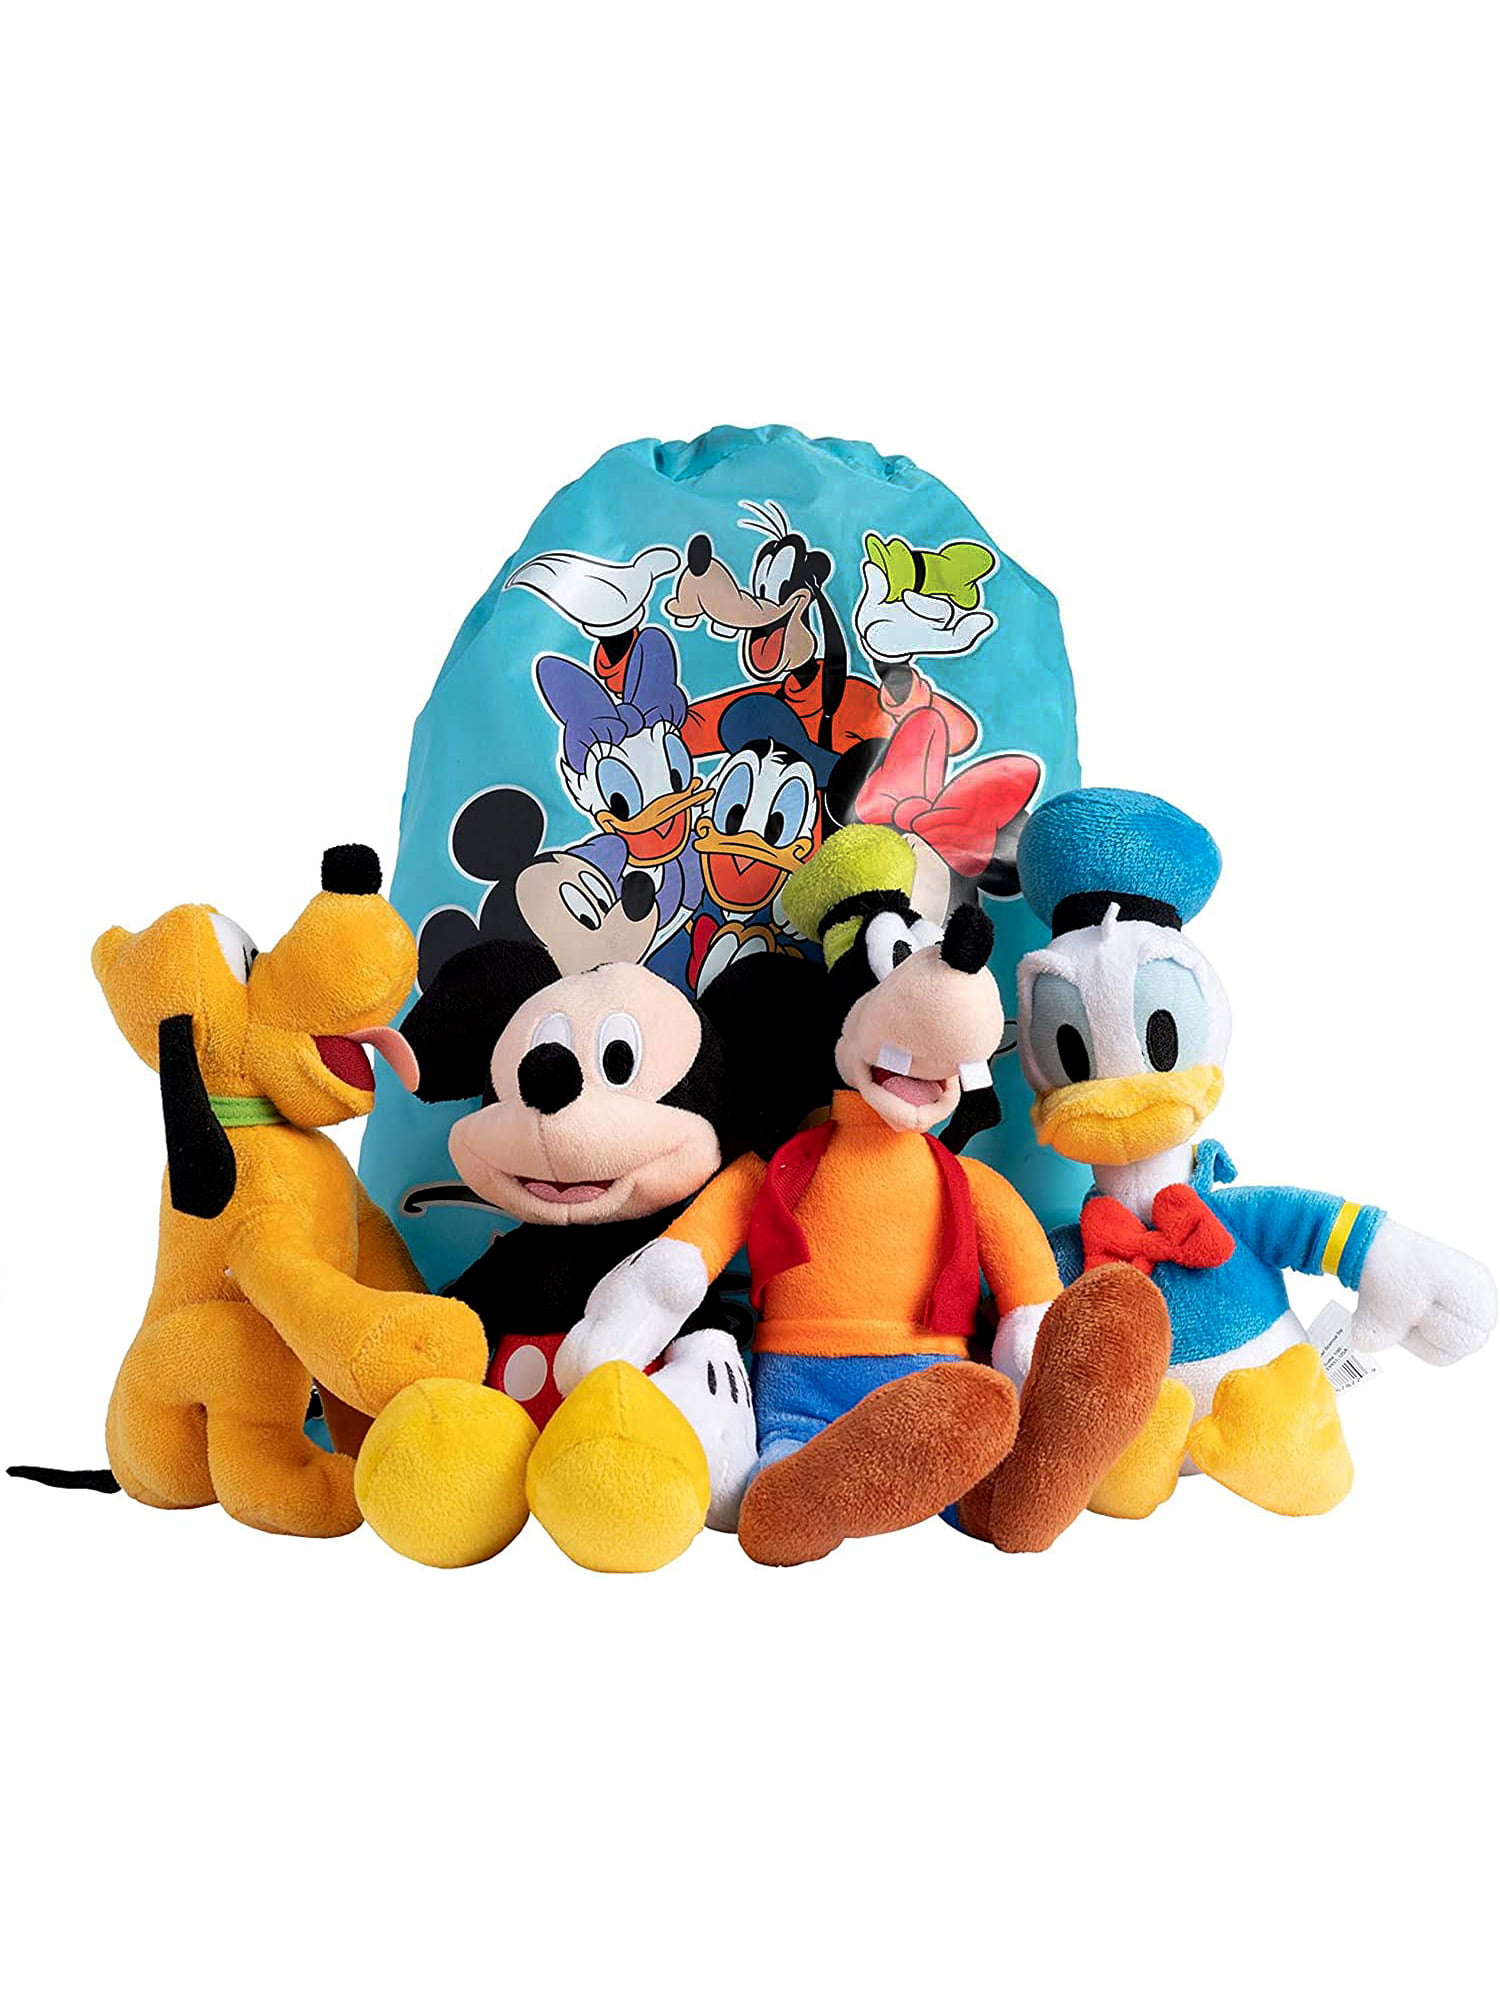 Minnie Donald Goofy 23 Disney Gift Cards: Mickey Toy Story ++ Daisy Pluto 